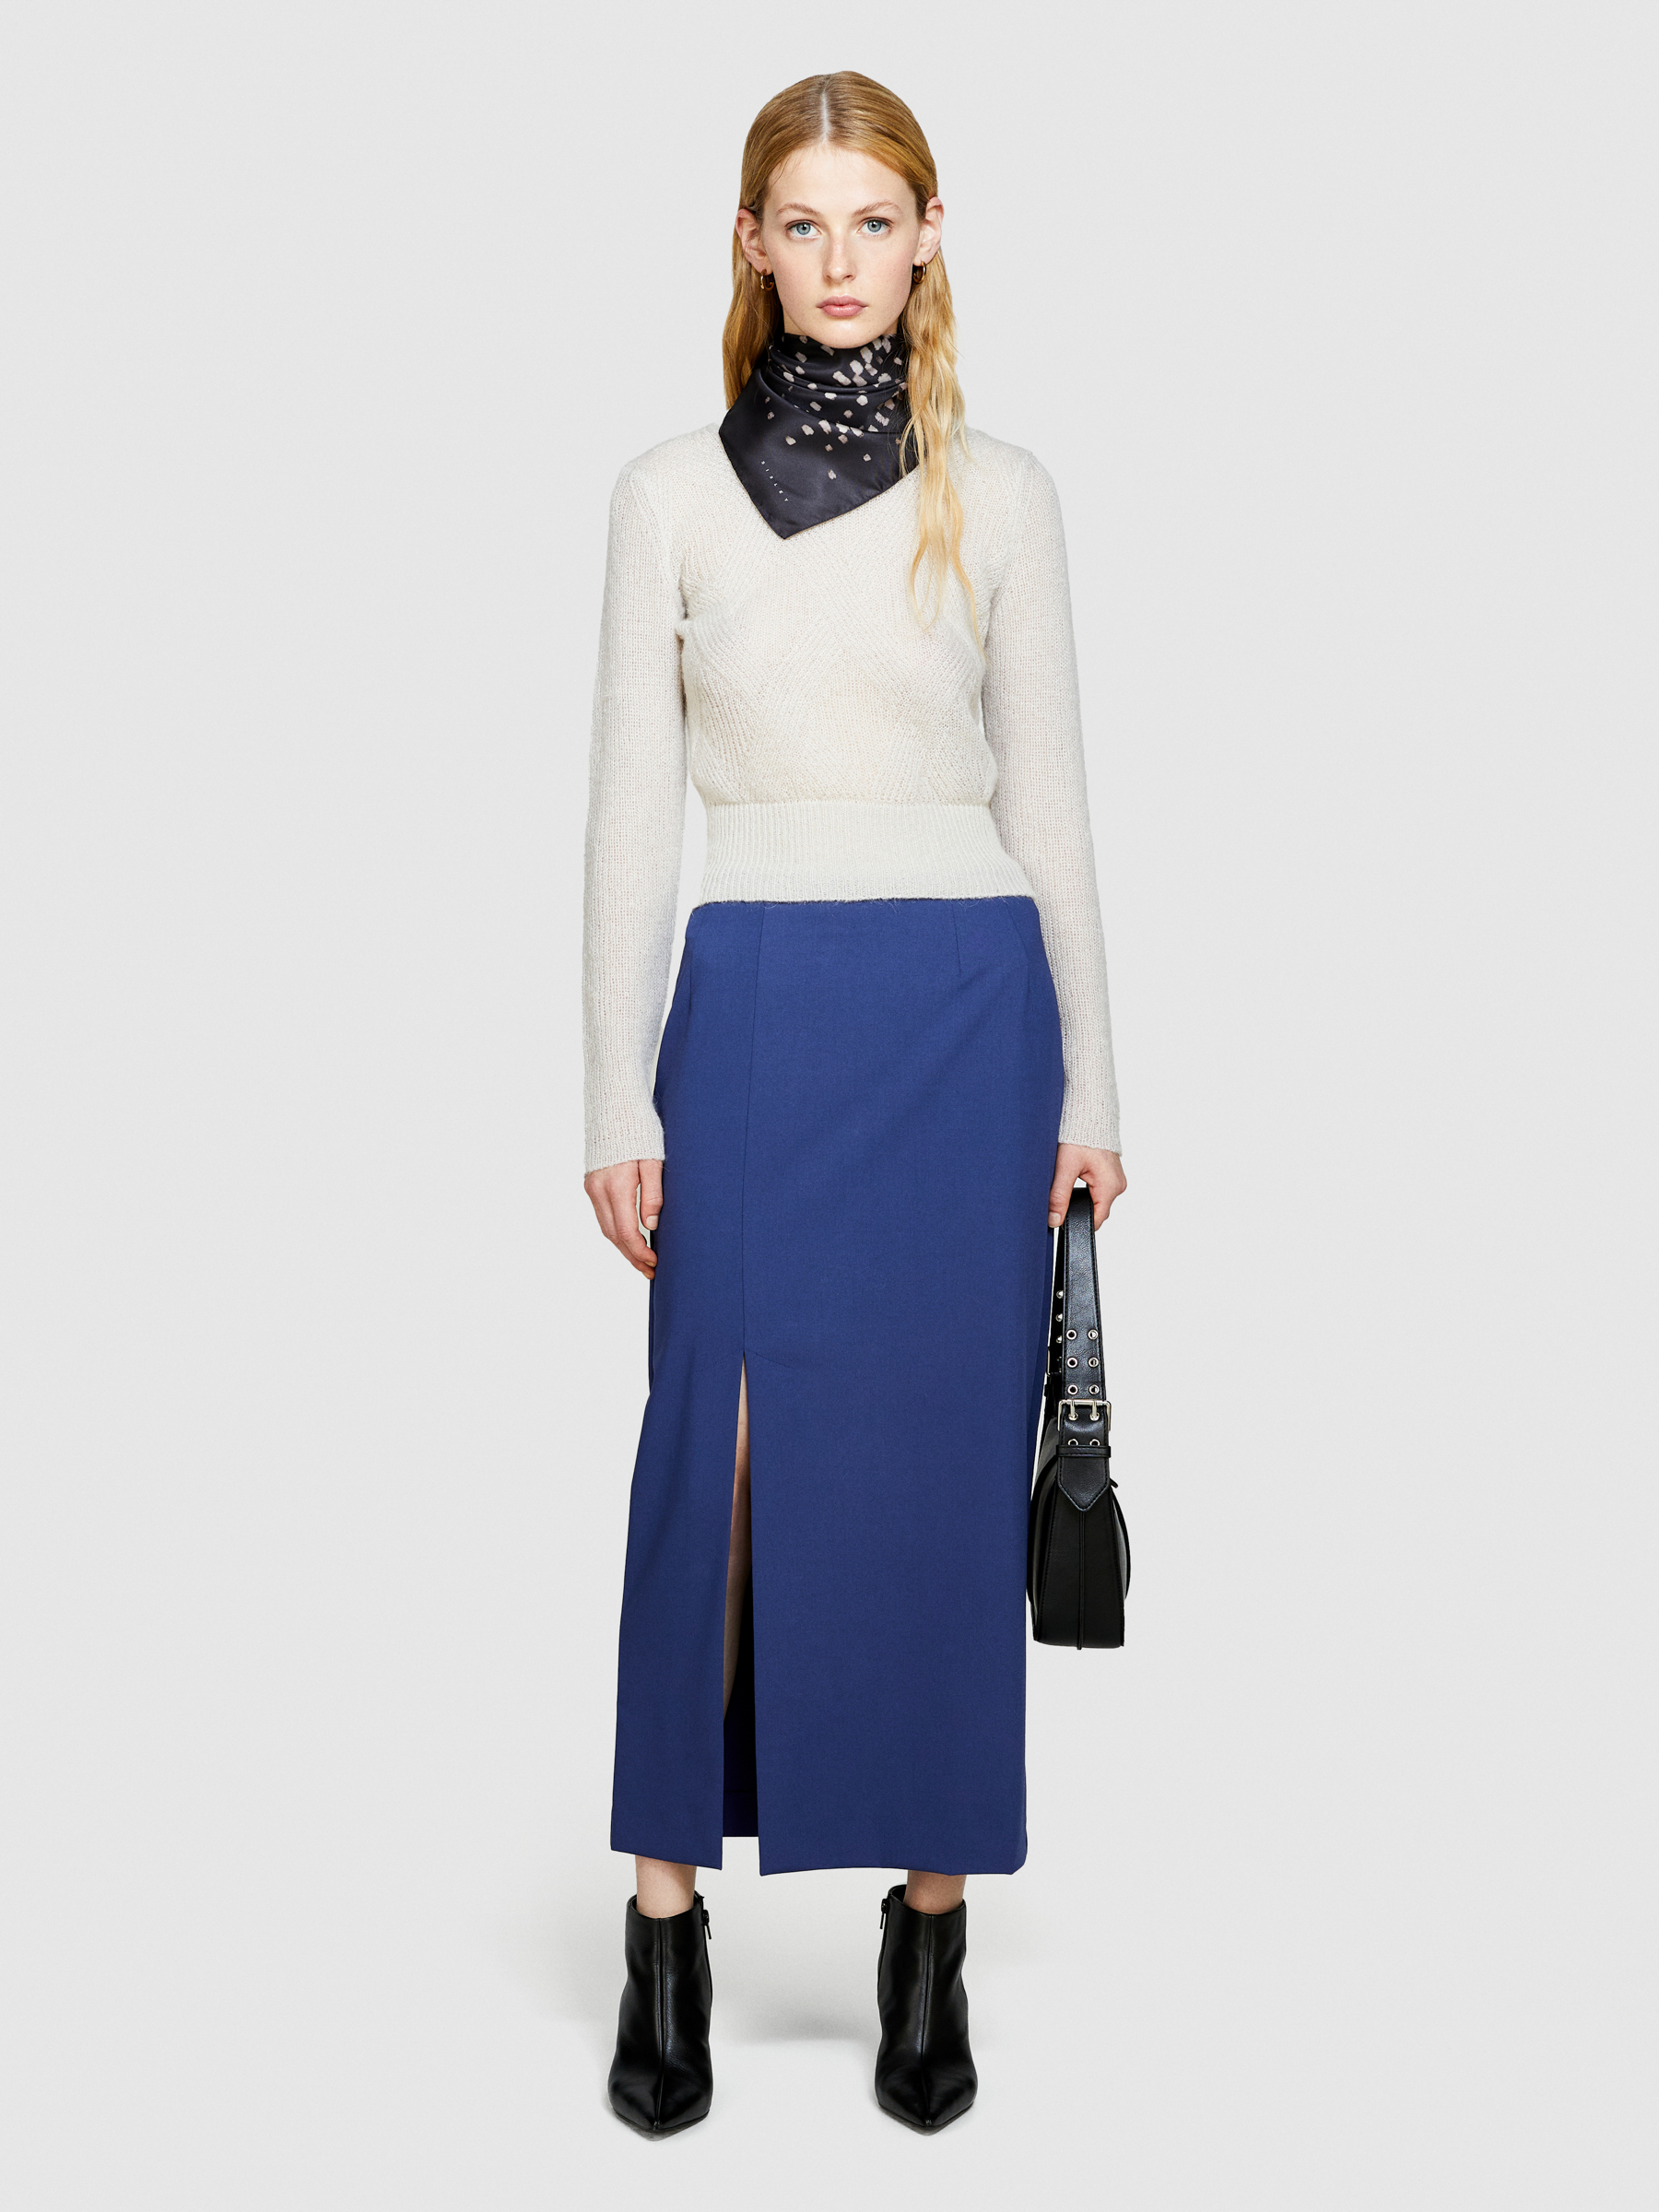 Sisley - Knit Sweater, Woman, Creamy White, Size: L